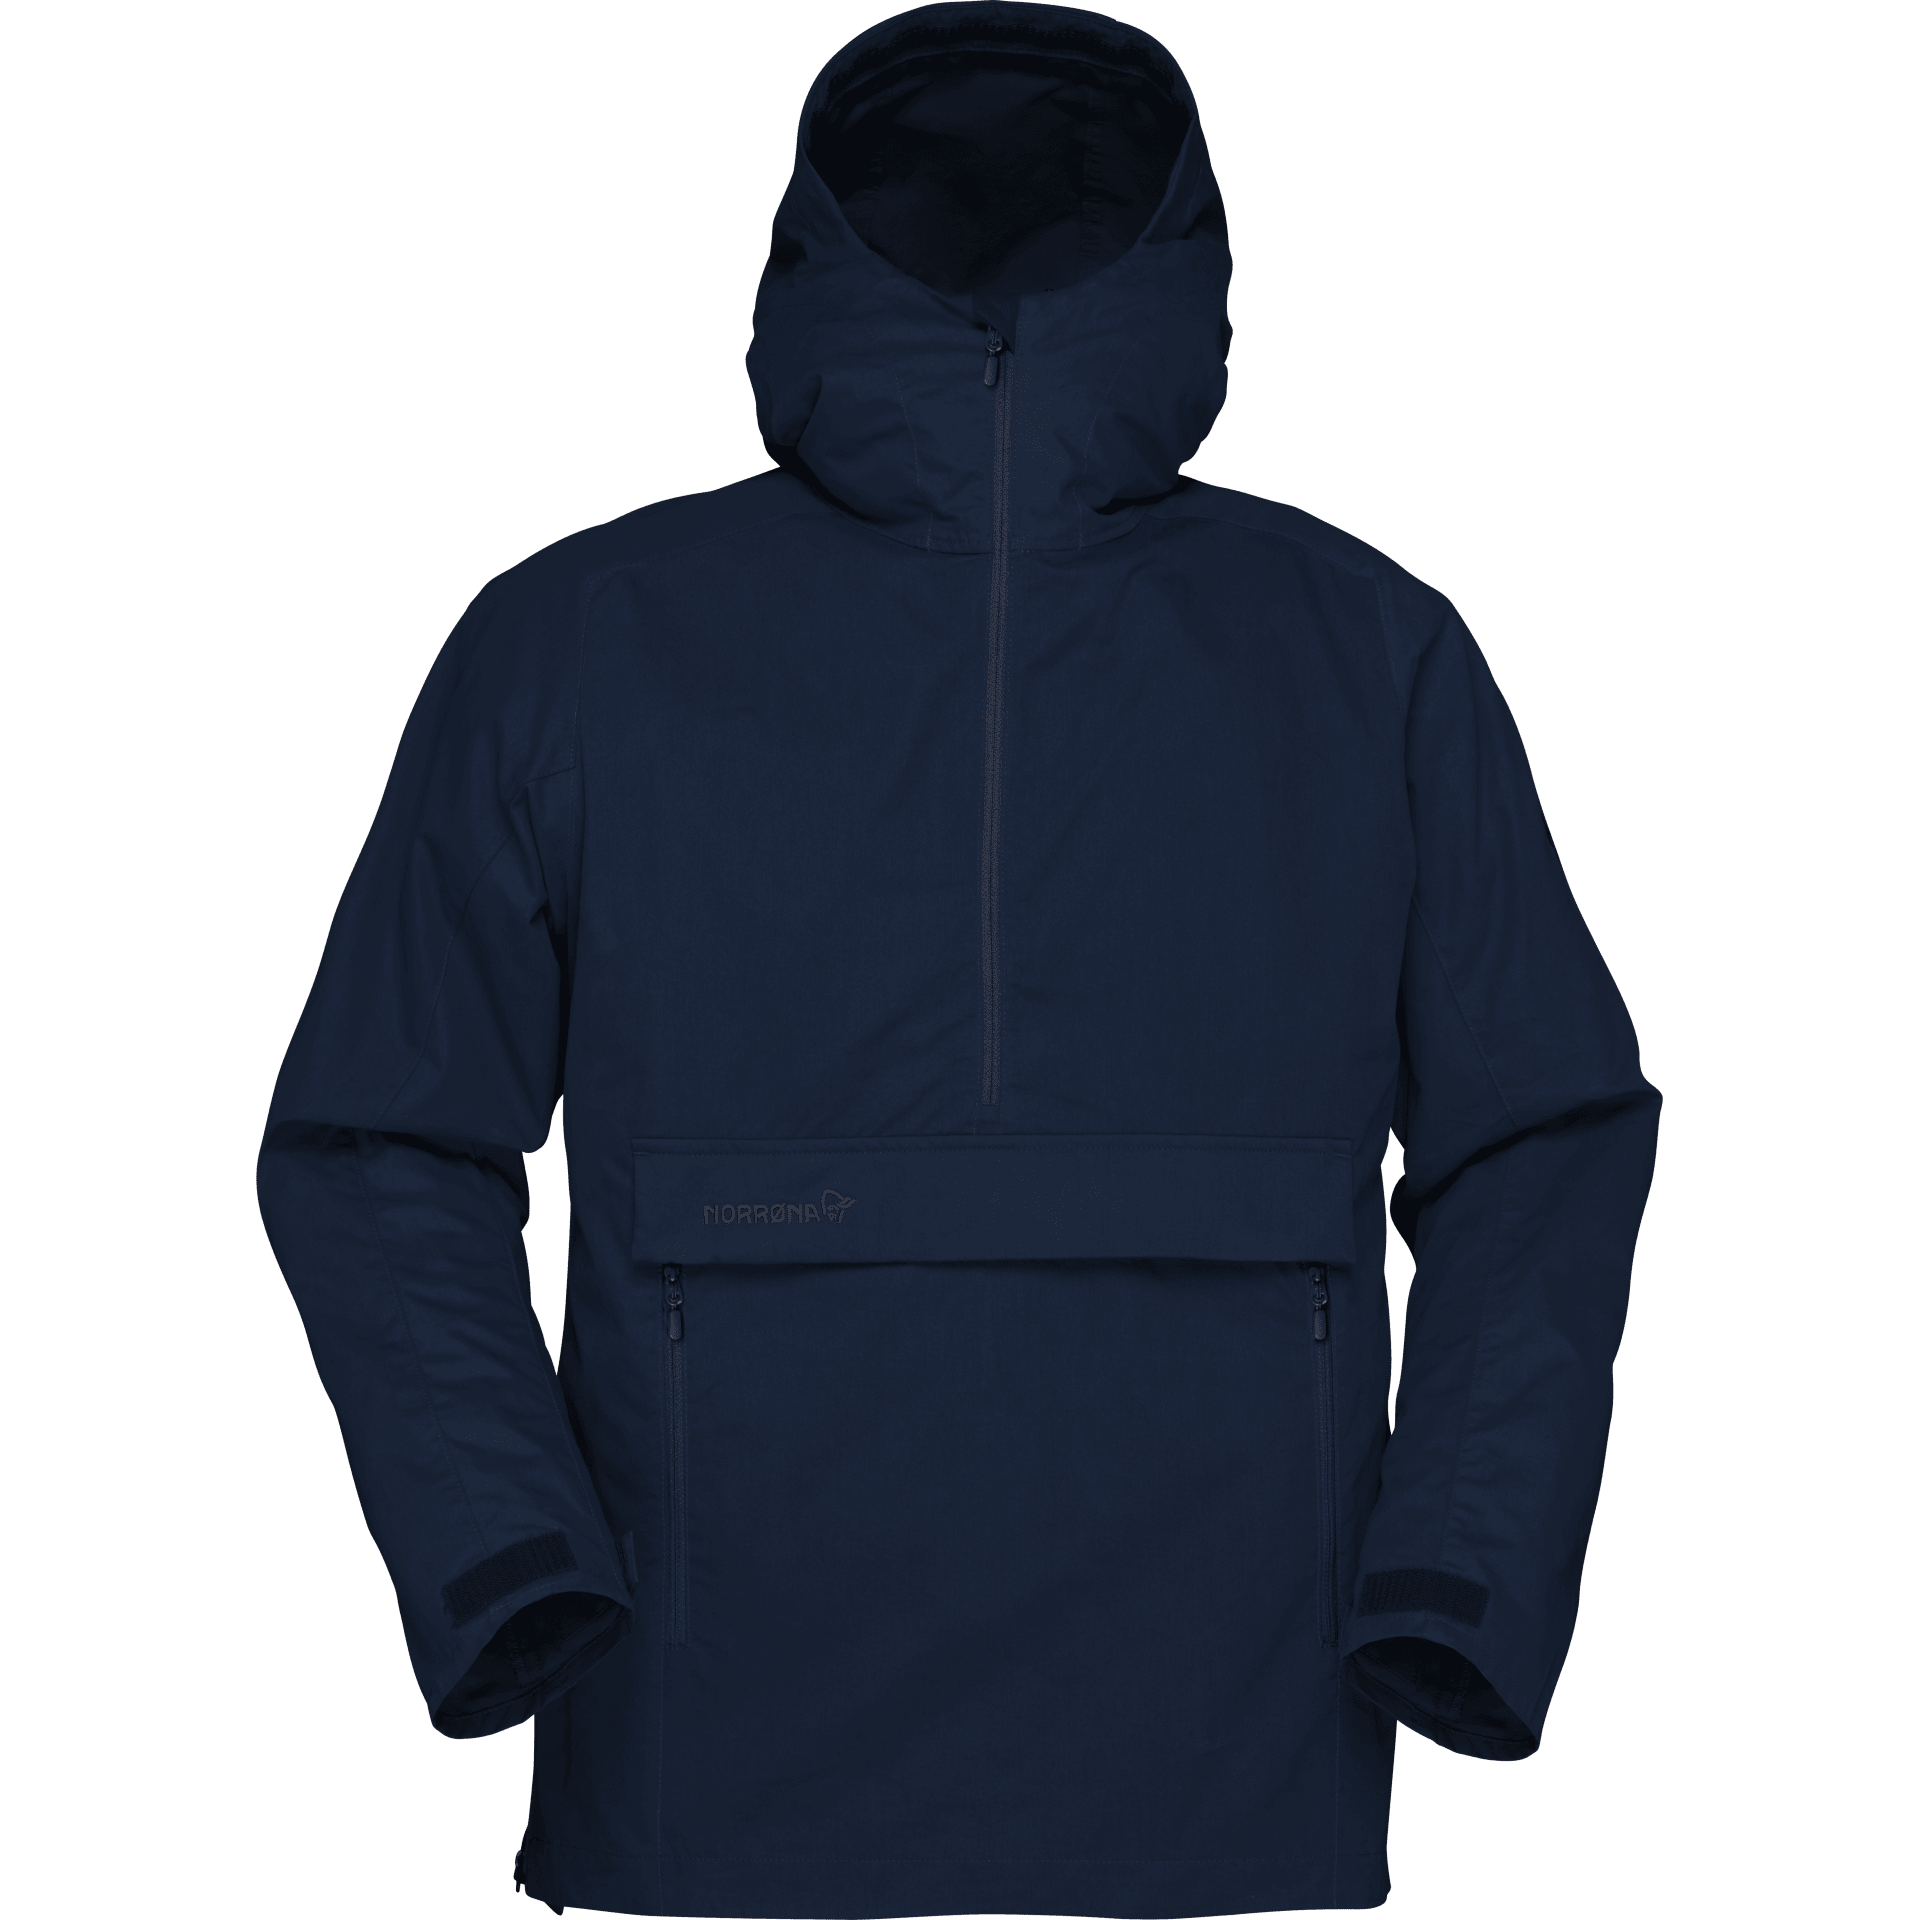 Nørrona Svalbard Cotton Anorak - Wind jacket - Men's